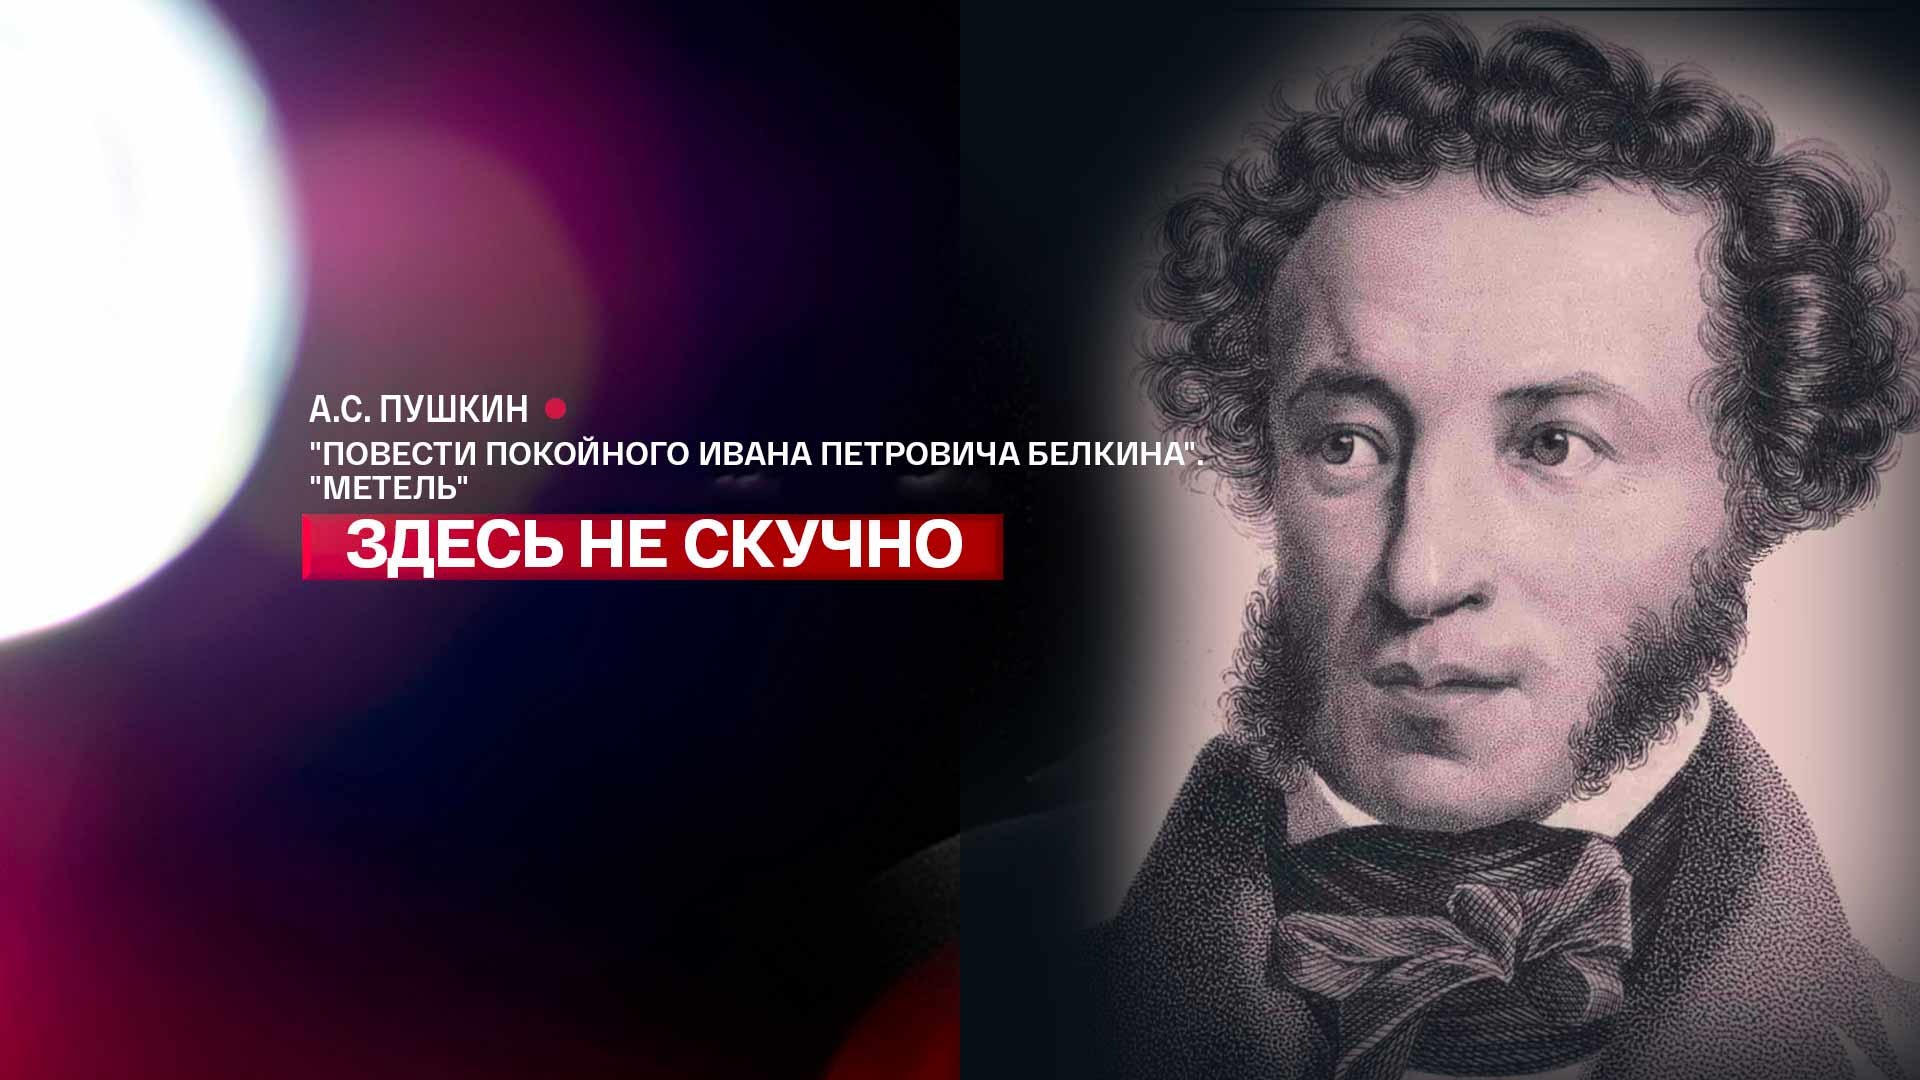 Иван Петрович Белкин Пушкин